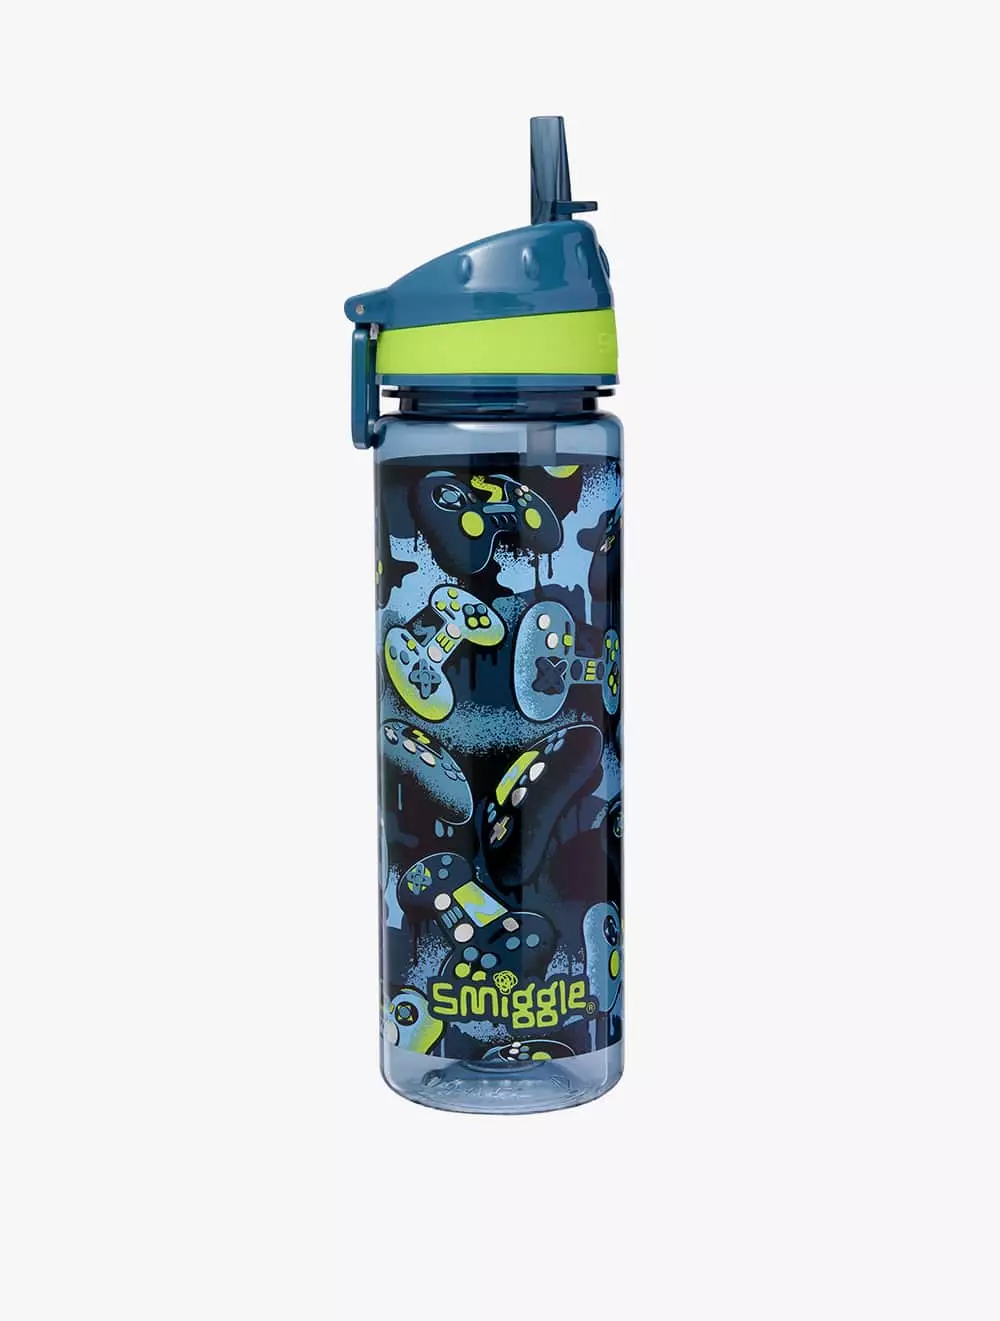 Jual Smiggle Smiggle Vivid Drink Up Plastic Drink Bottle 650ml Grey ...